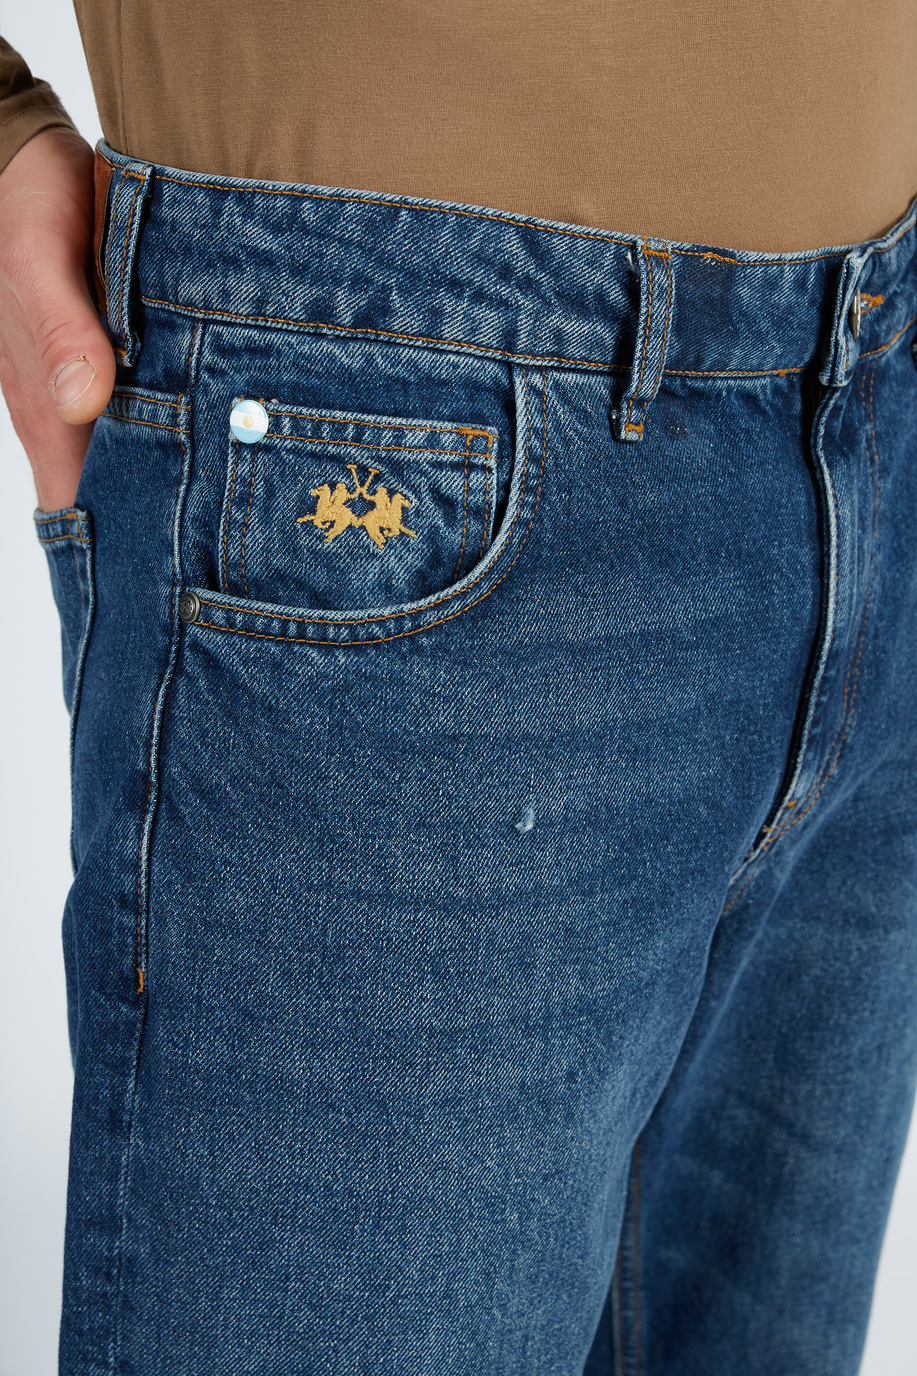 Pantalone da uomo modello 5 tasche in denim regular fit - La stagione delle feste per lui | La Martina - Official Online Shop